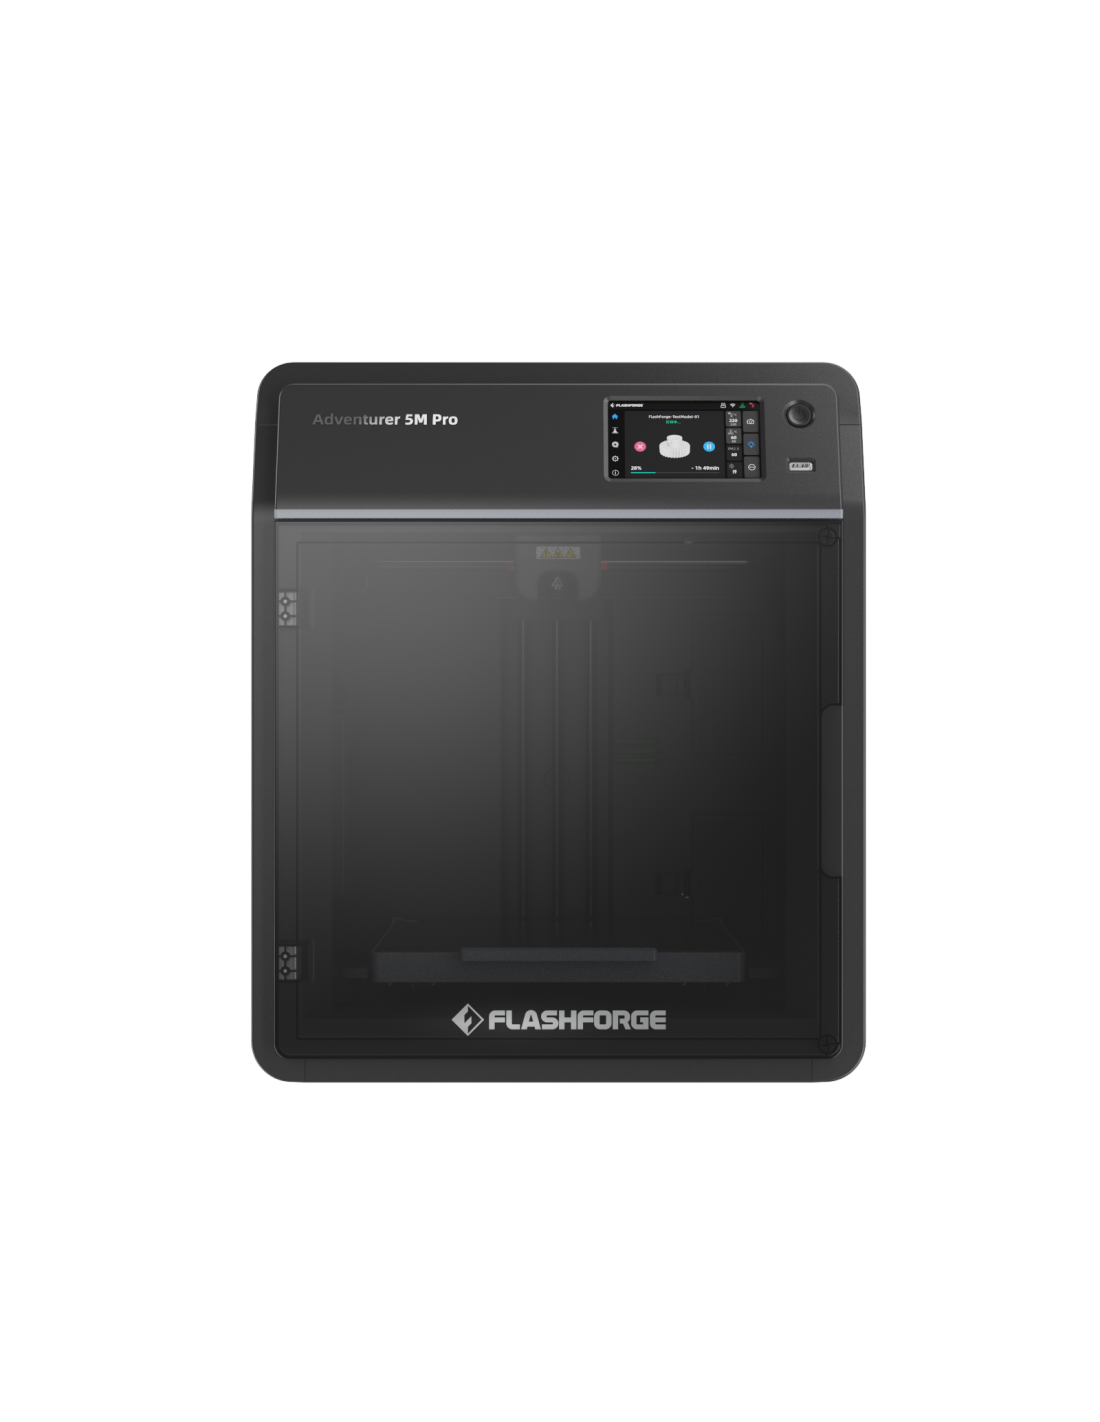 Flashforge Adventurer 5M Pro 3D-Drucker